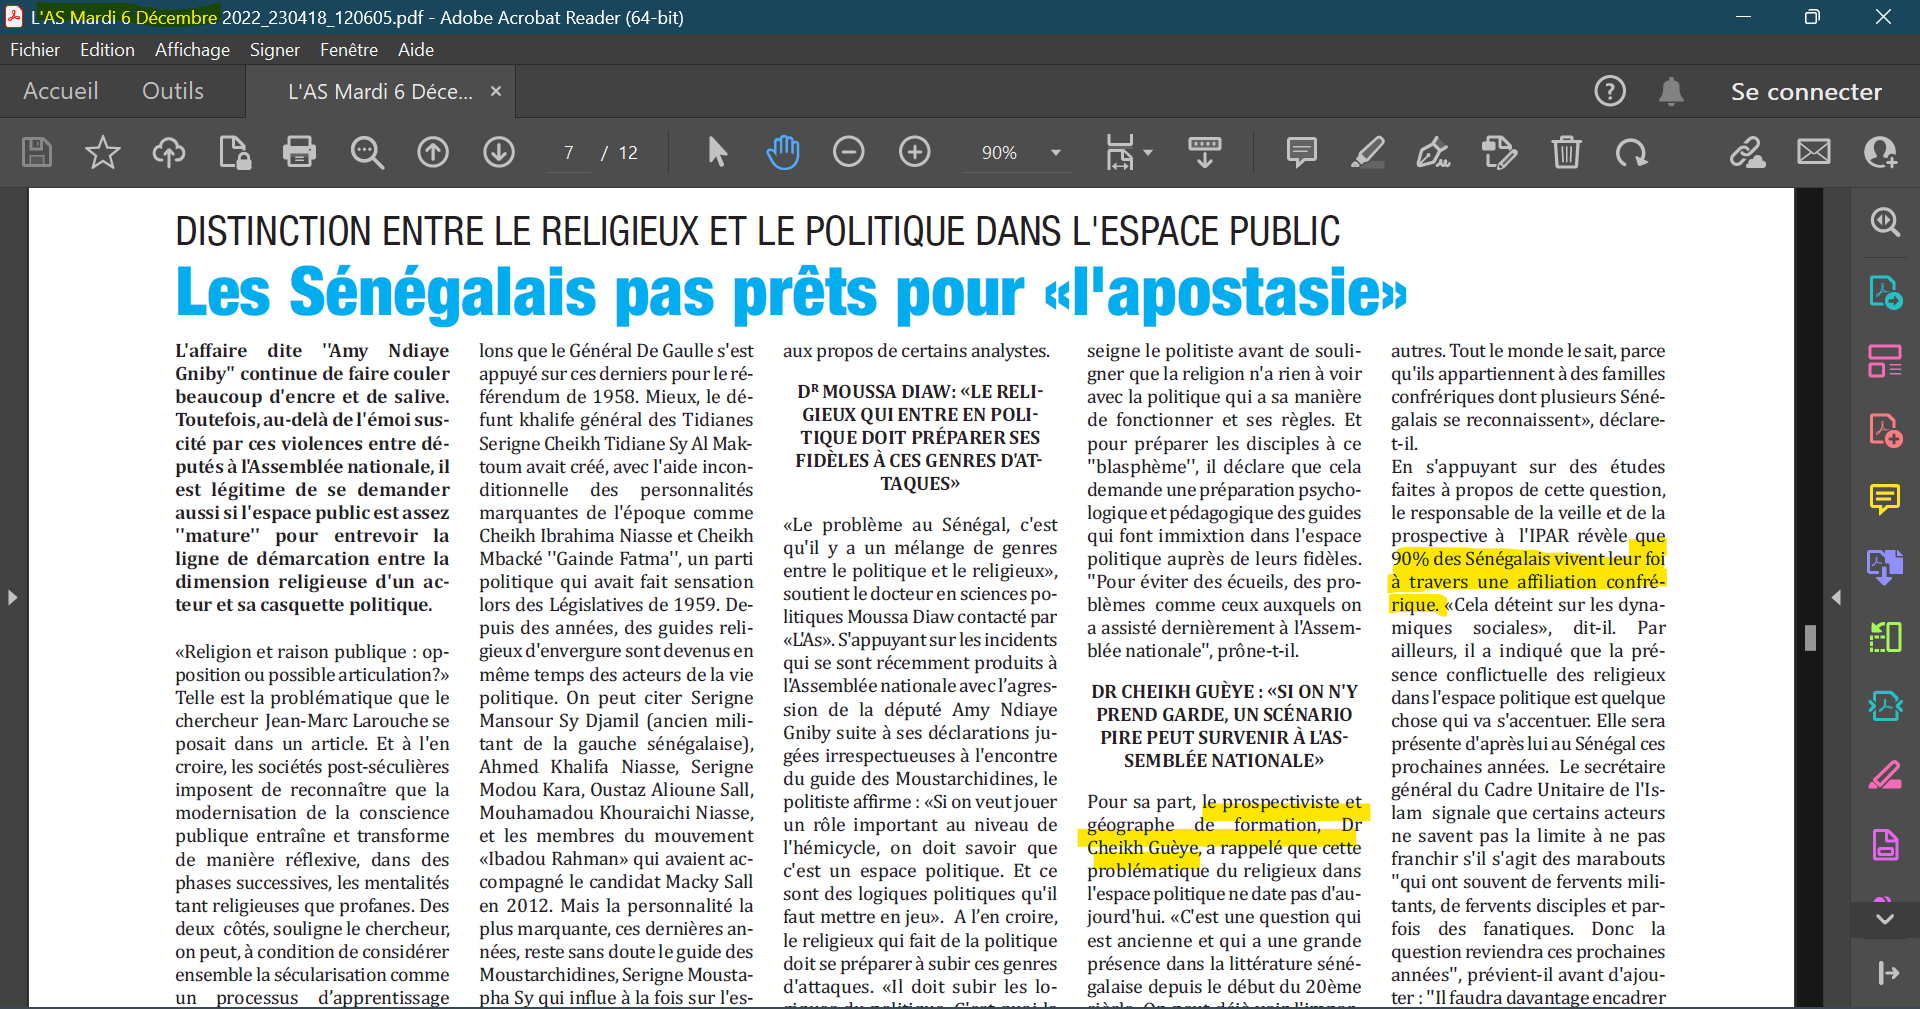  Capture d'écran. Extrait d'un article publié le mardi 6 décembre 2022 par le quotidien sénégalais L'As.